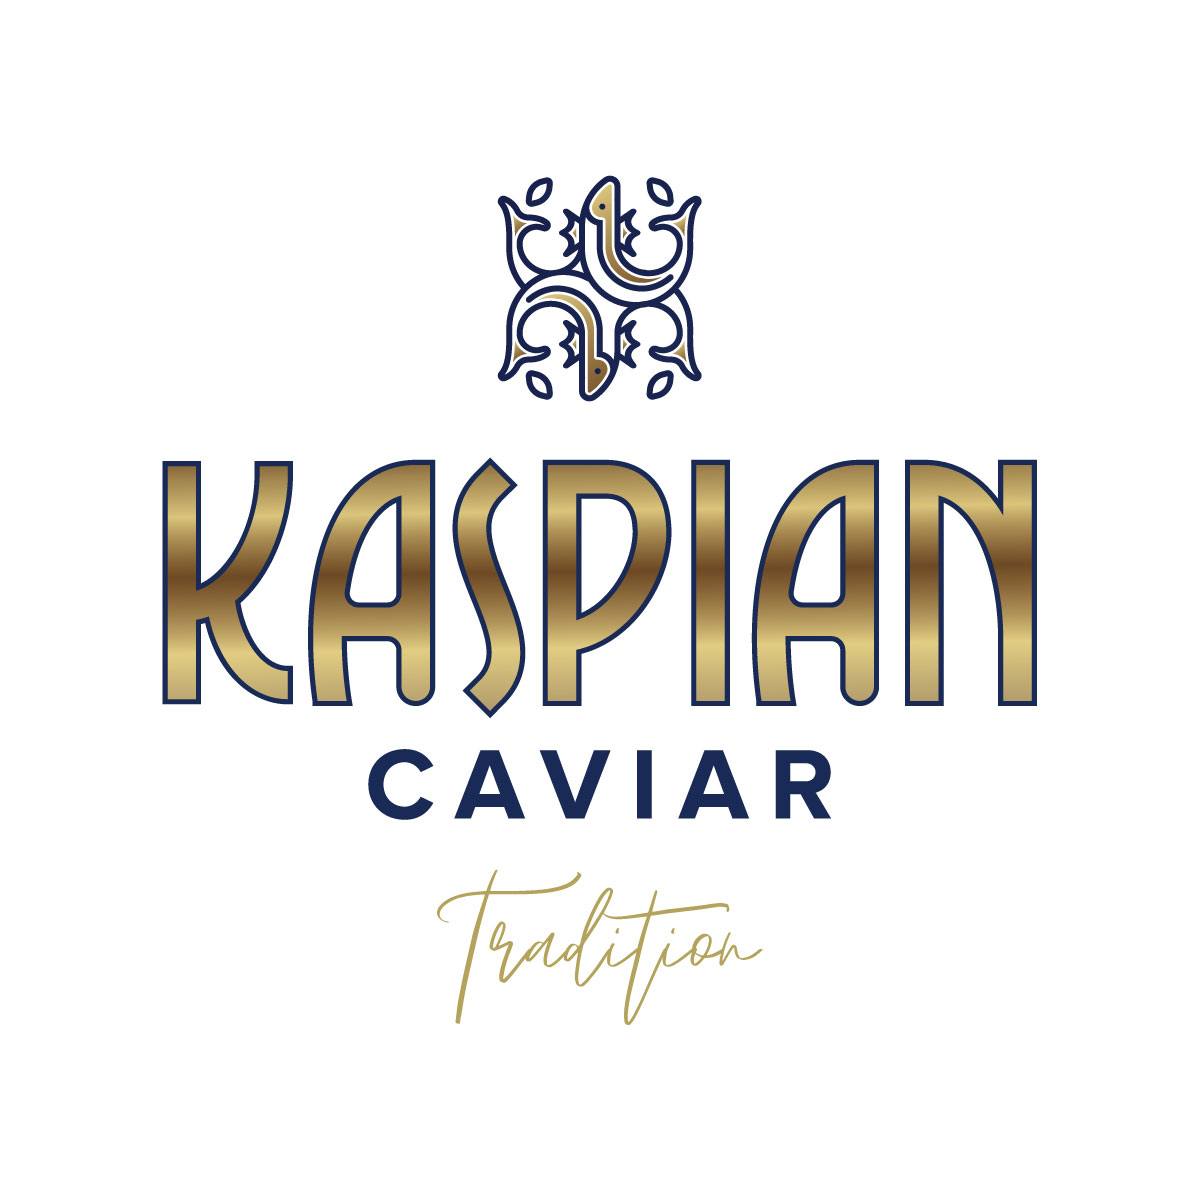 Kaspian Caviar Foodstuff Trading LLC